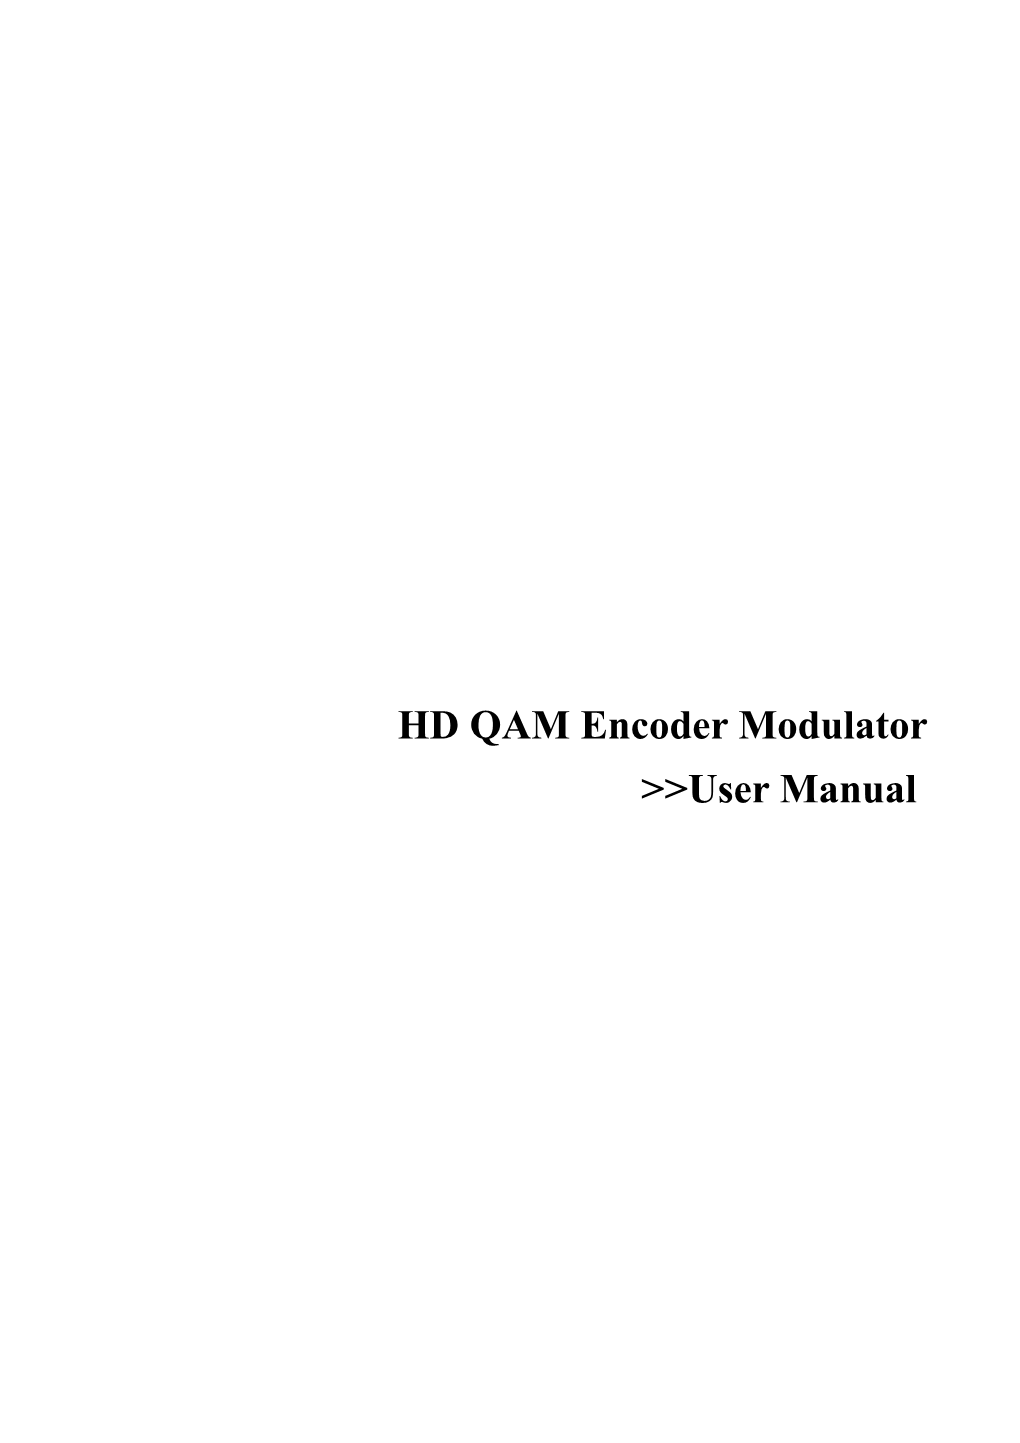 HD QAM Encoder Modulator